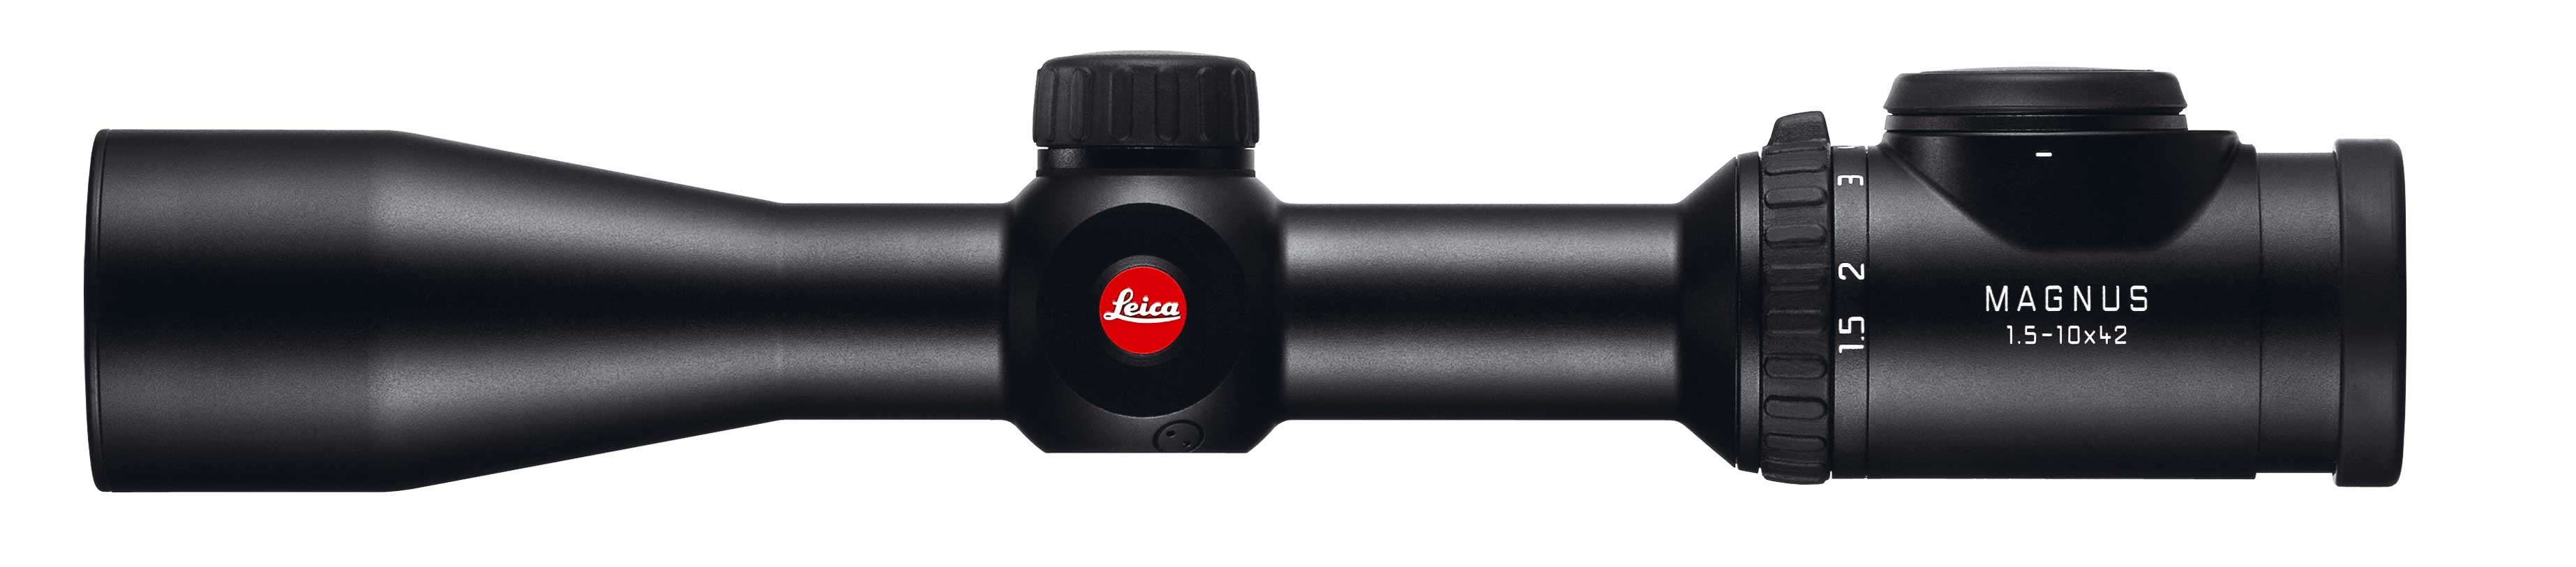 Leica Magnus 1,5-10x42i mit ASV - Zuverlässigkeit, eine robuste Mechanik und höchste Präzision – die Zielfernrohre aus dem Hause Leica gehören zweifelsohne zur Premium-Klasse.